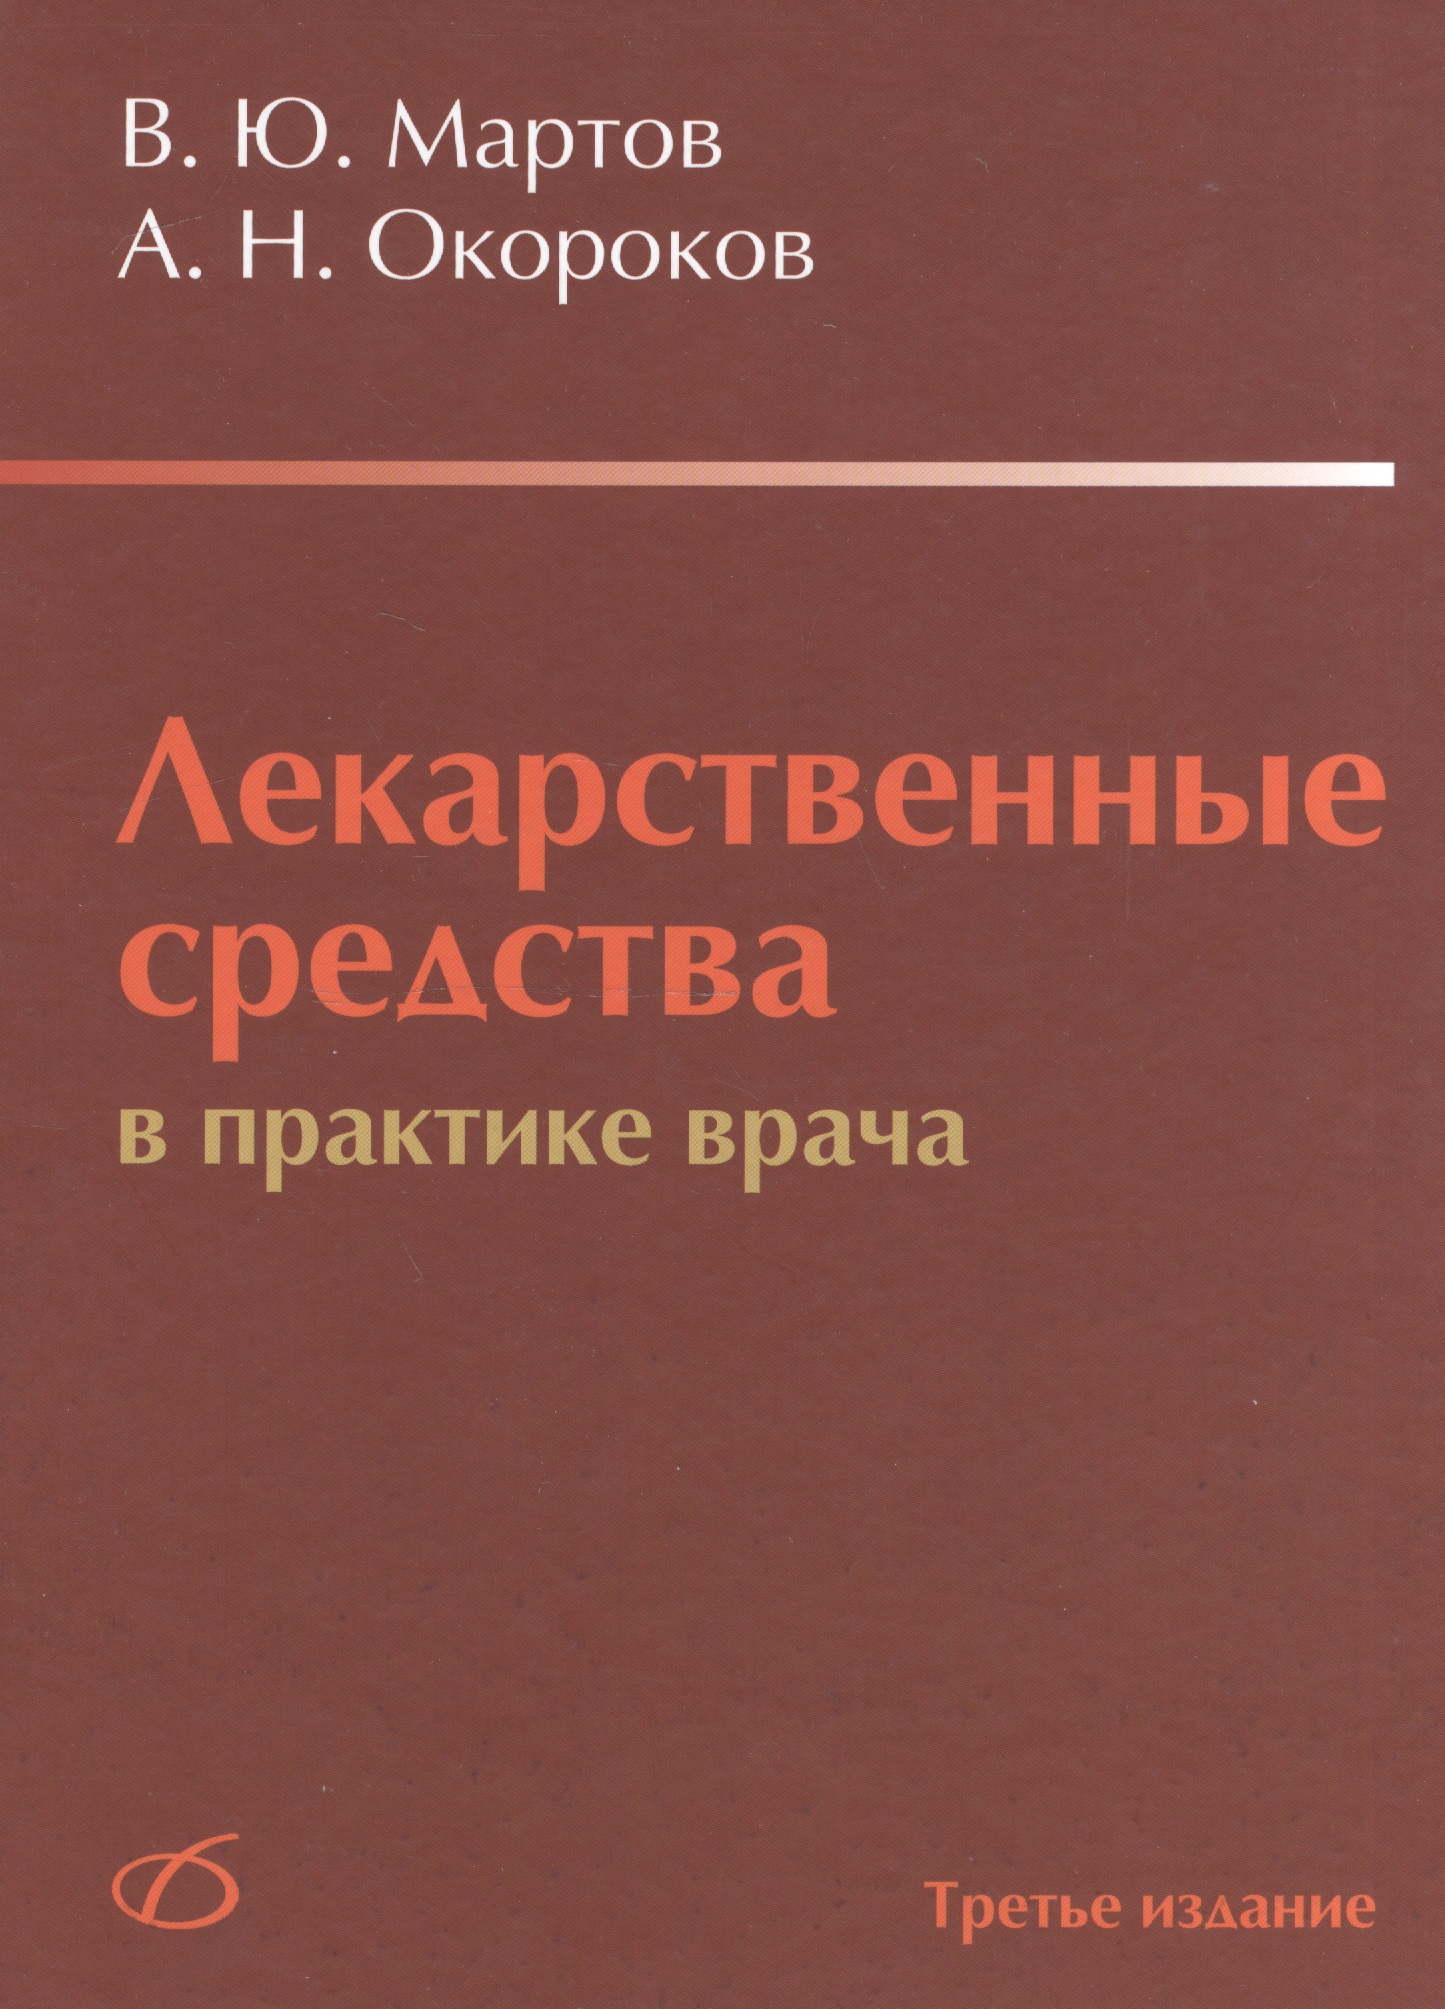 Мартов Владимир Юрьевич - Лекарственные средства в практике врача (3-е издание)